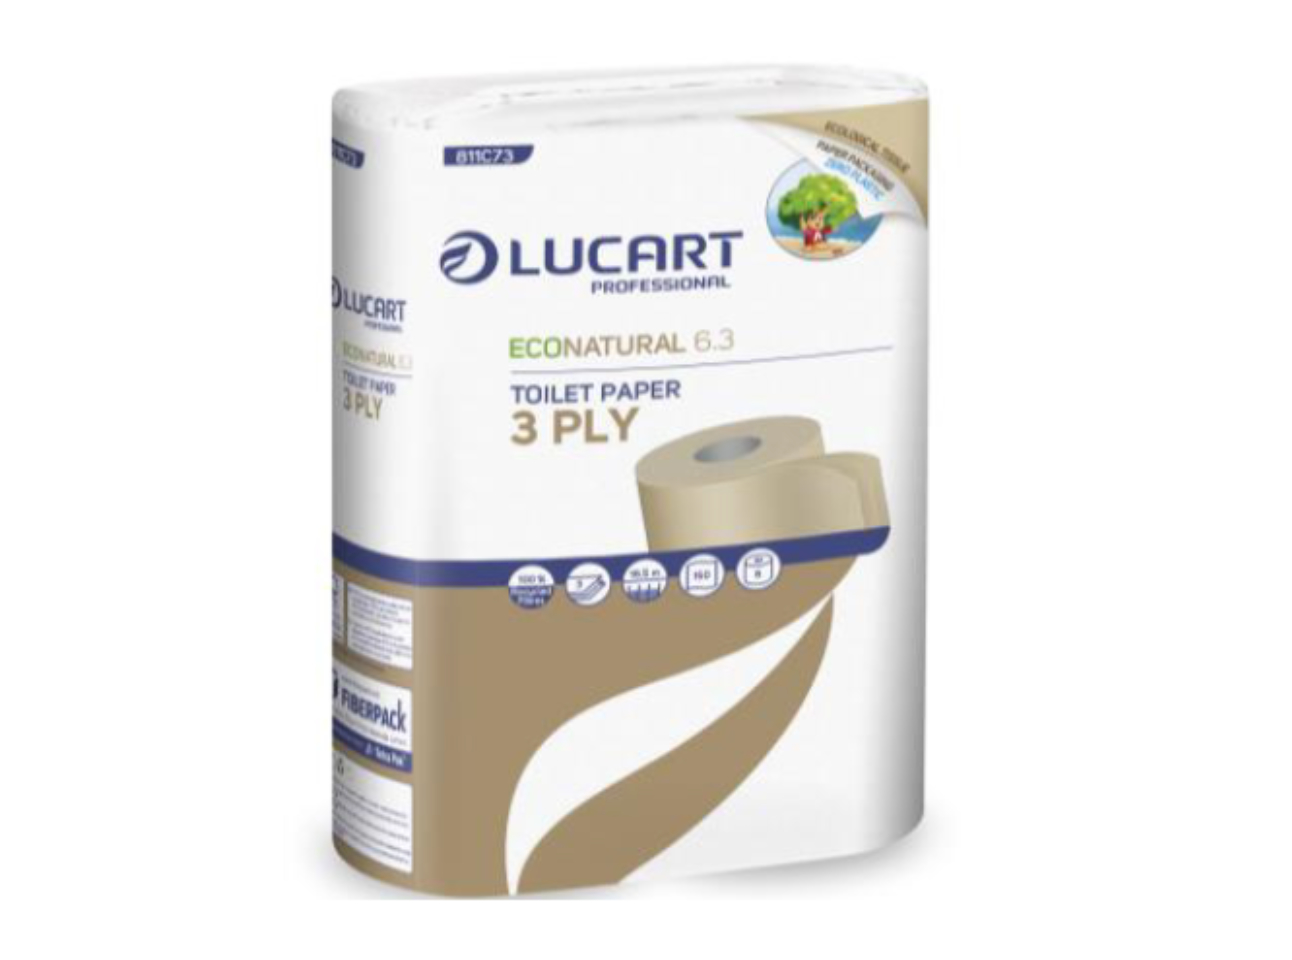 Lucart Eco Natural 6.3 Toilettenpapier 3-lagig